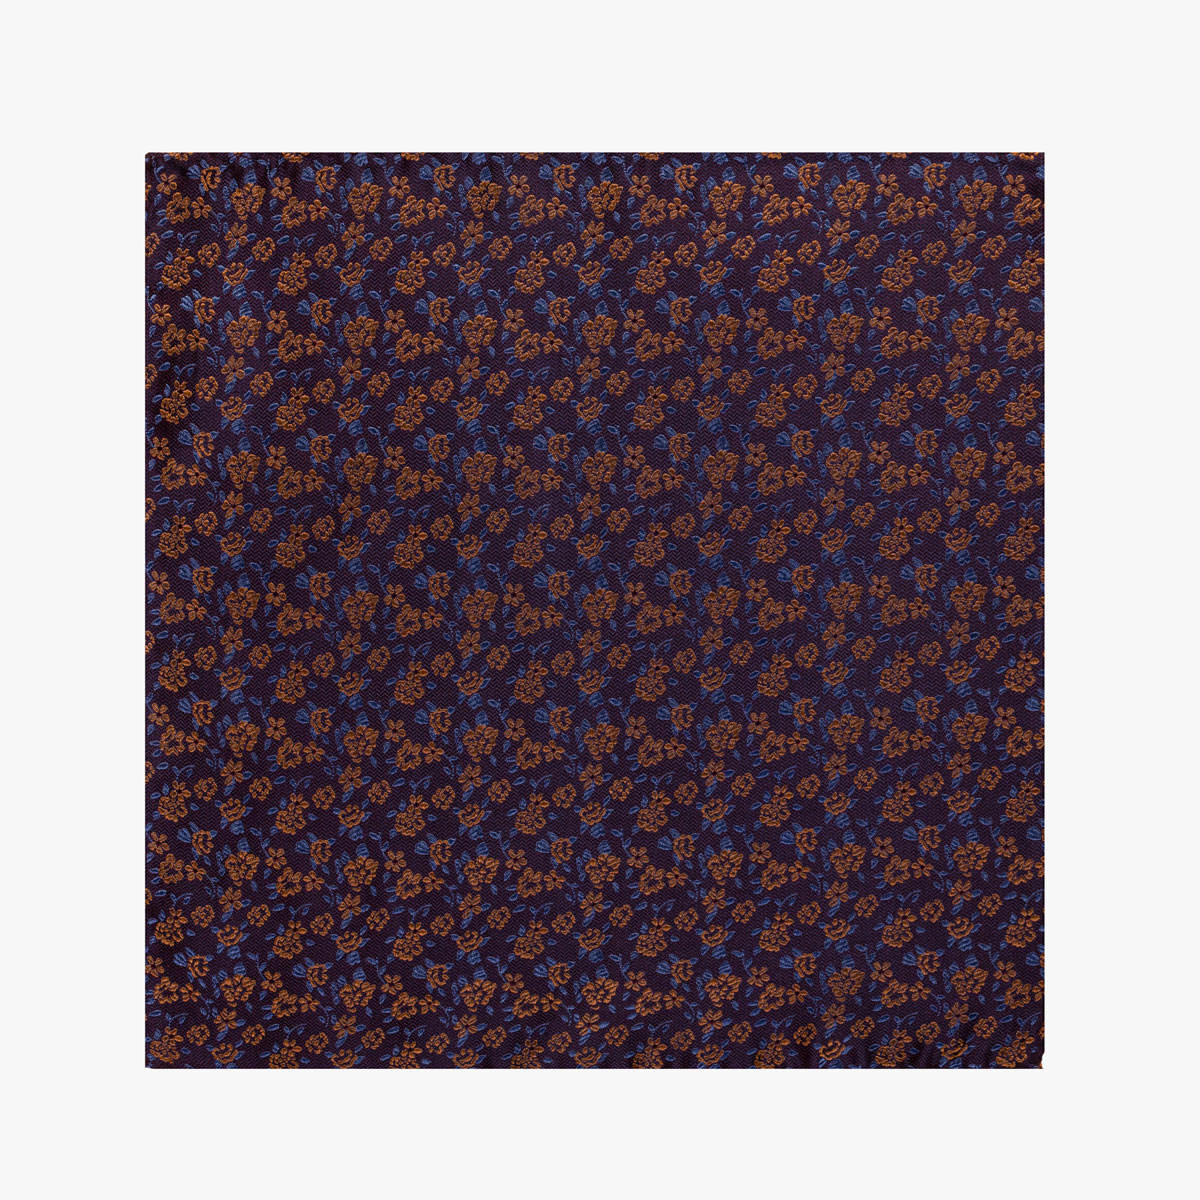 Einstecktuch mit floralem Muster in dunkelrot orange